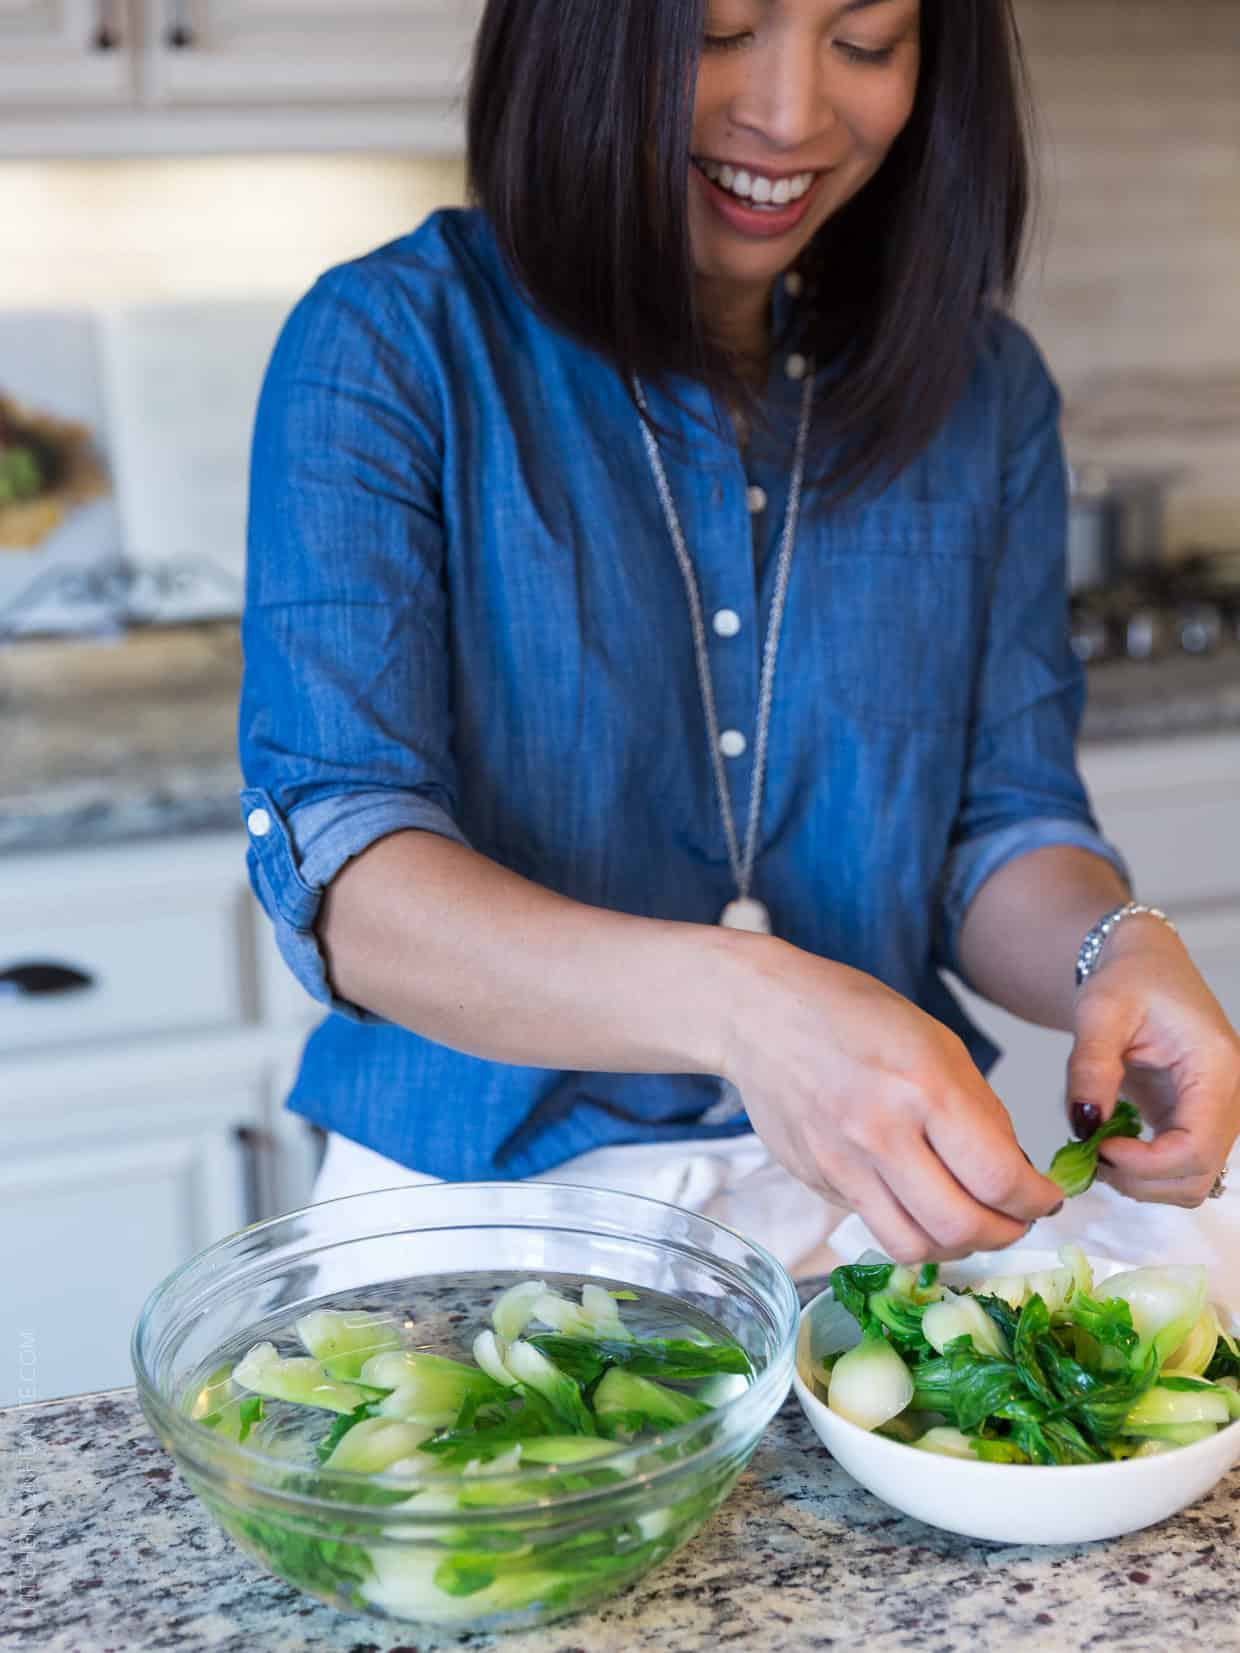 A woman wiht dark hair and a blue shirt preps green vegetables.